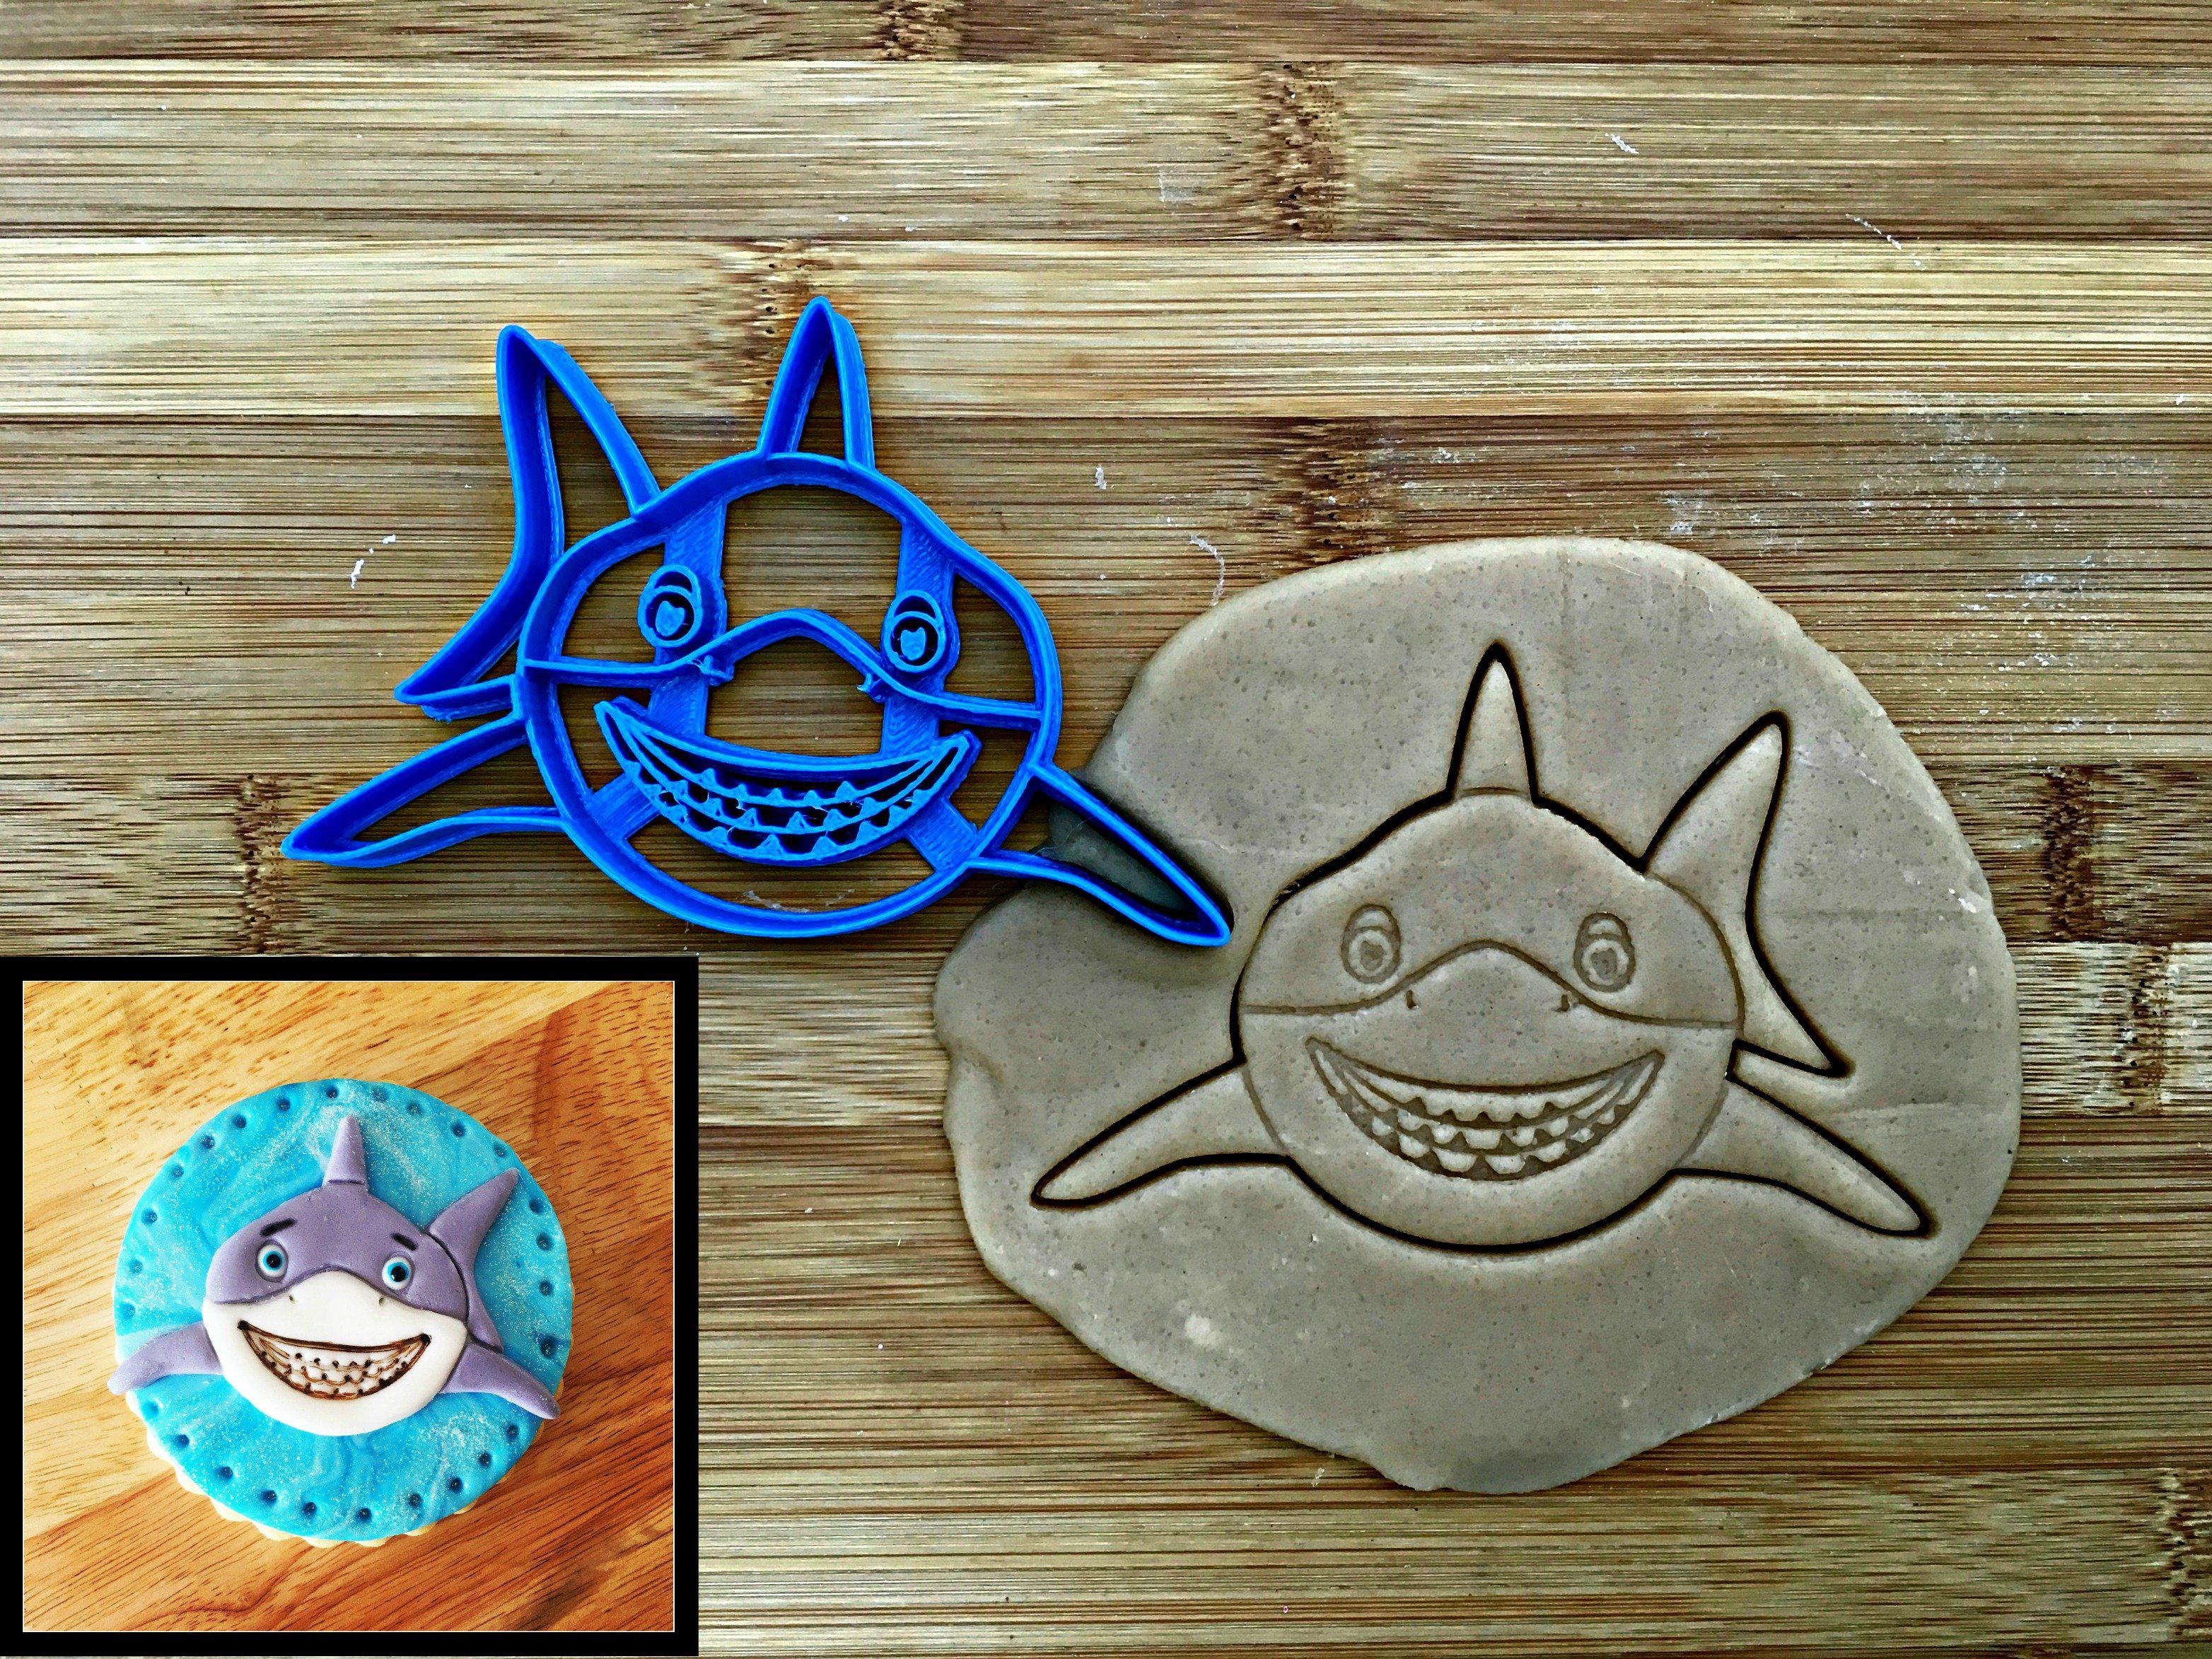 Smiling Shark Face Cookie Cutter/Dishwasher Safe